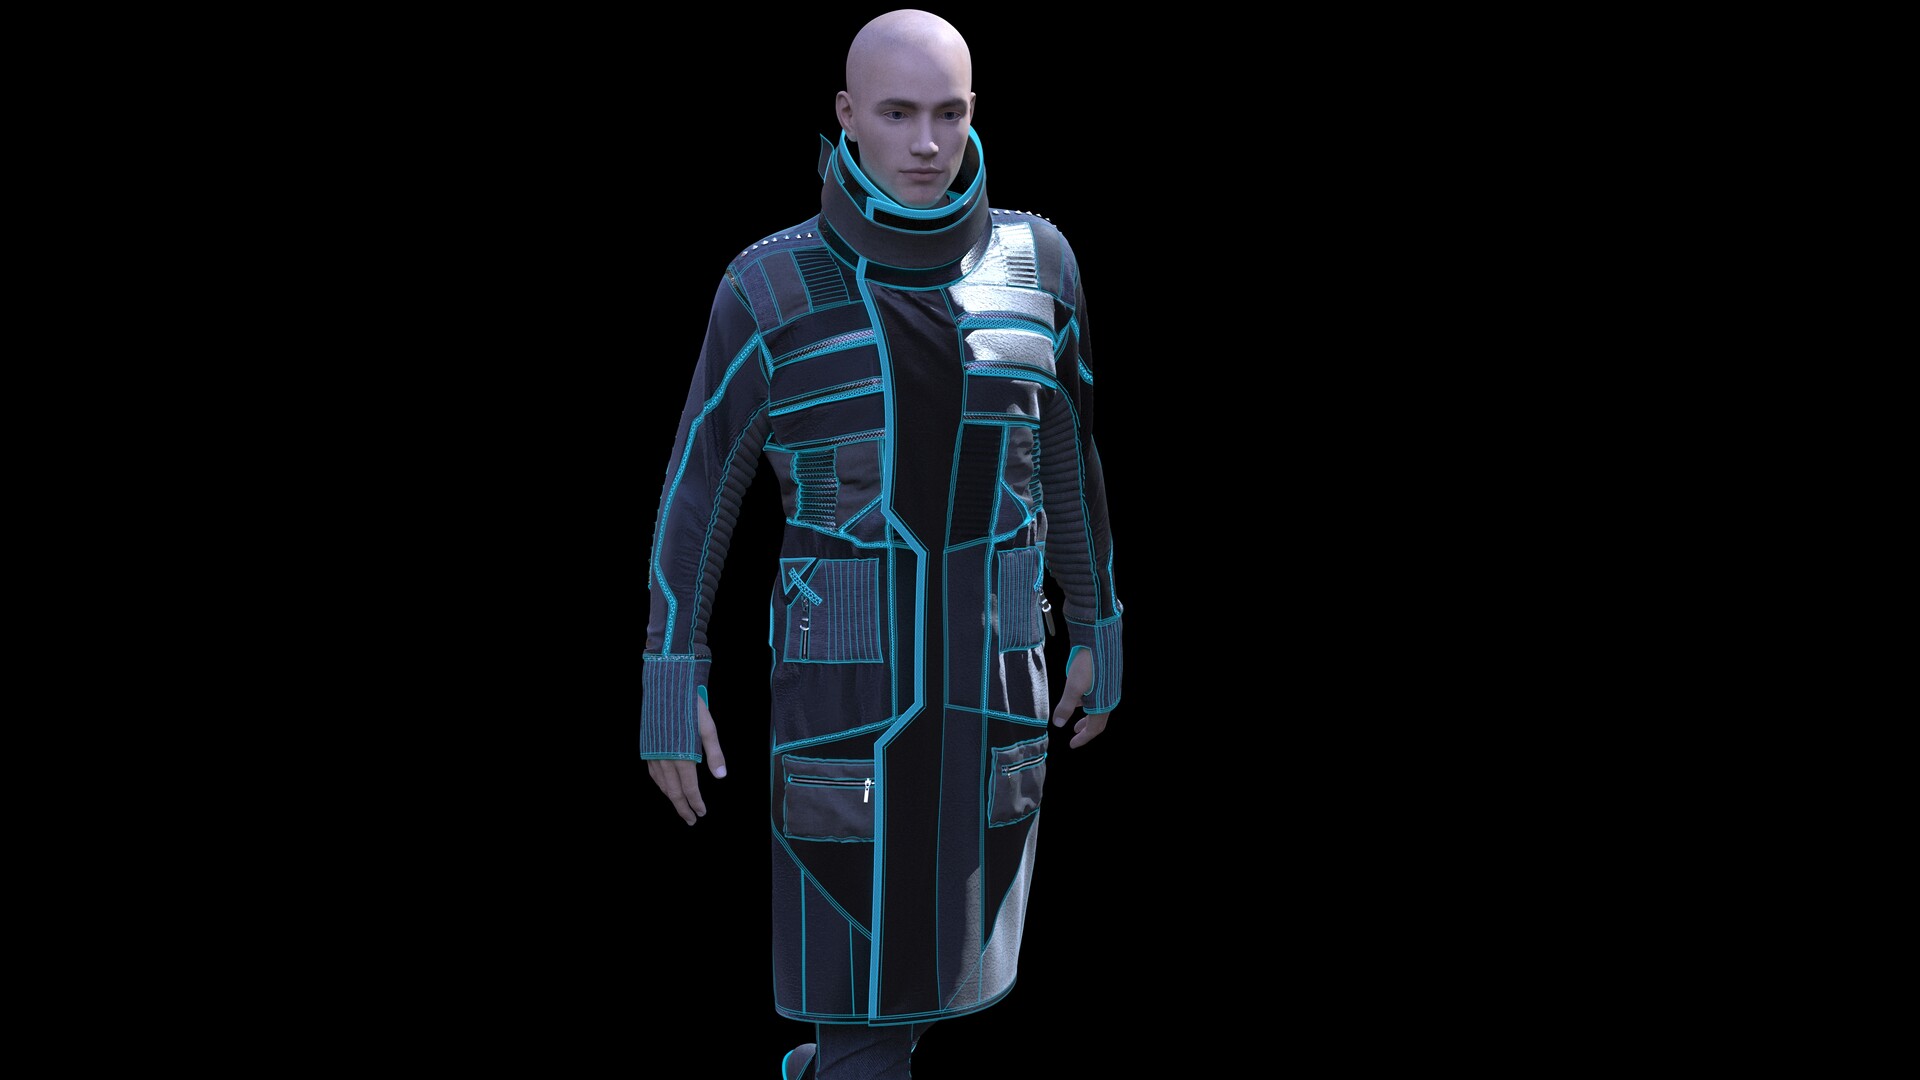 ArtStation - Sci-Fi / Cyberpunk Male Clothing.